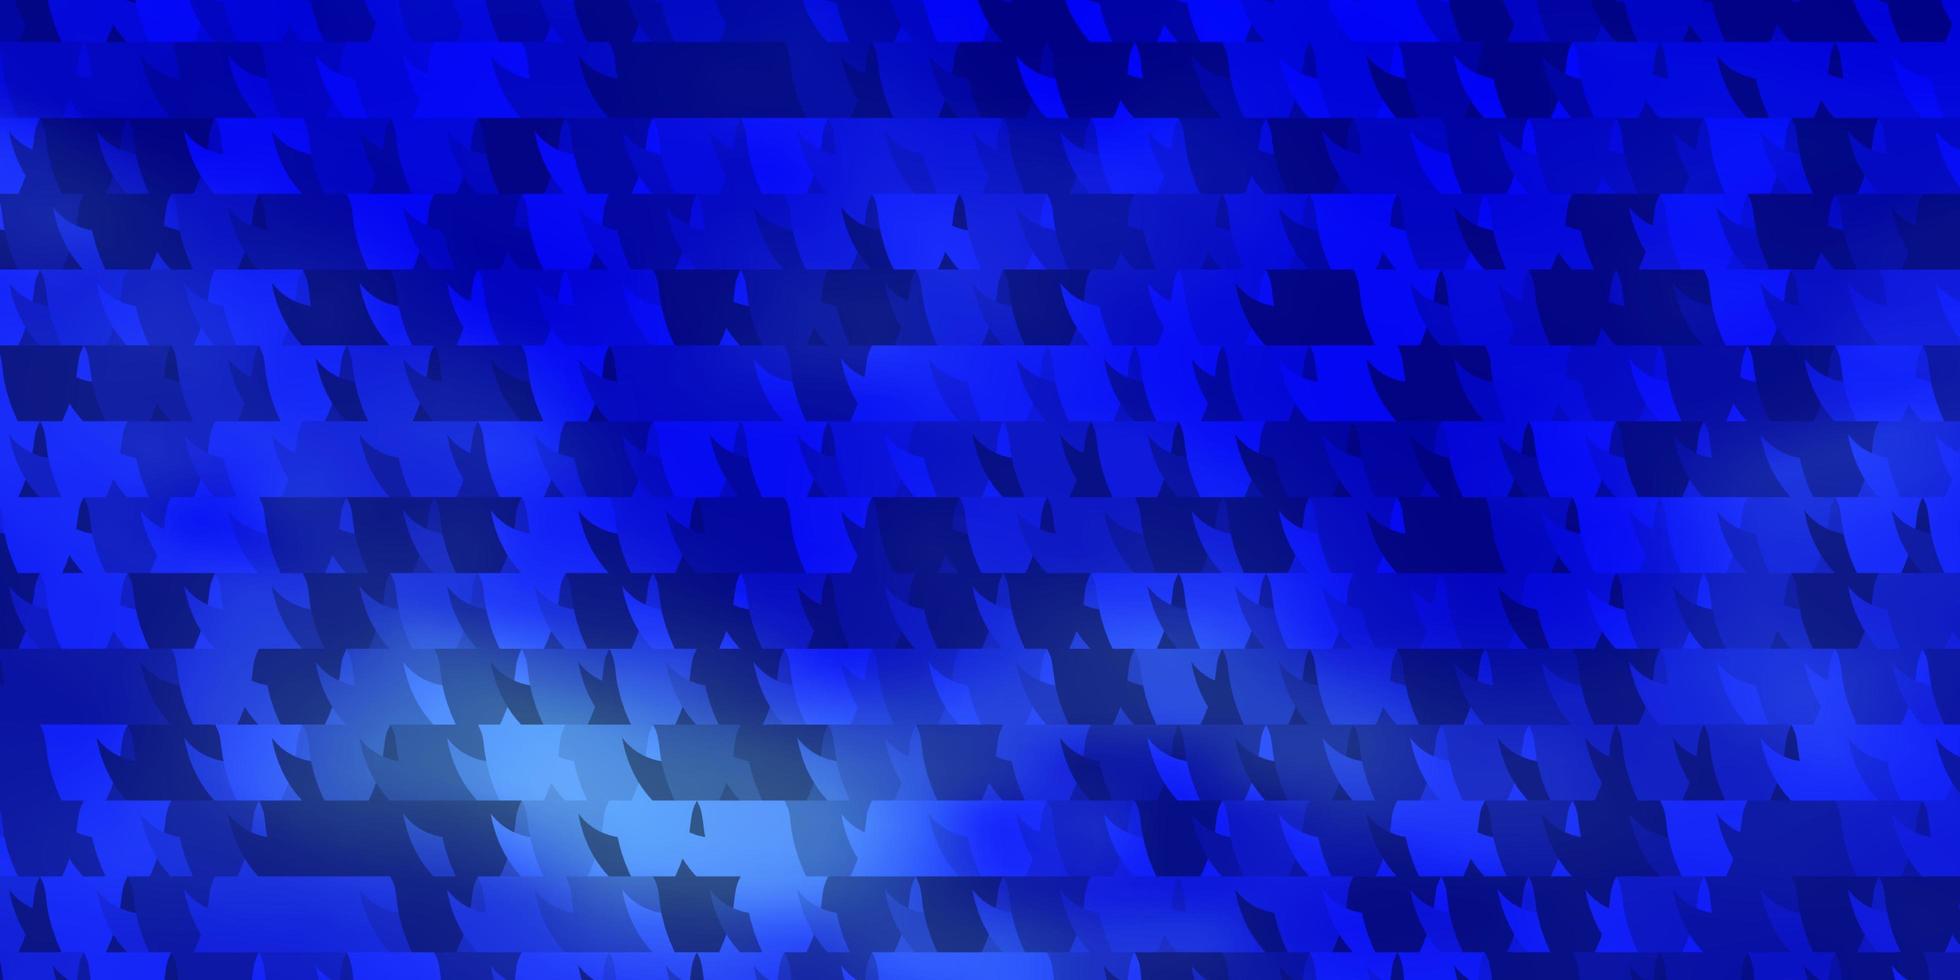 Plantilla de vector azul claro con triángulos de cristales